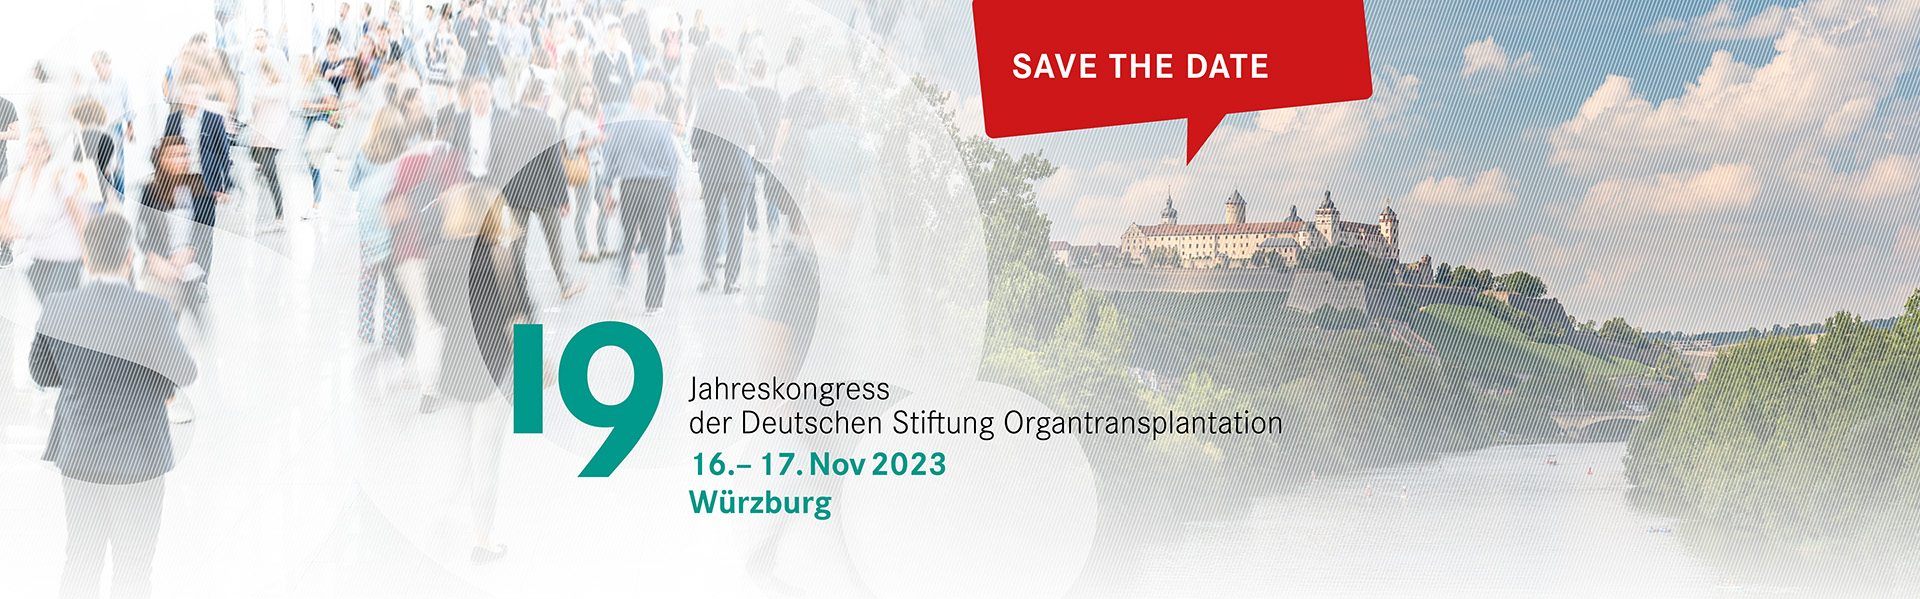 19. Jahreskongress der Deutschen Stiftung Organtransplantation 16. – 17. Nov 2023 Würzburg